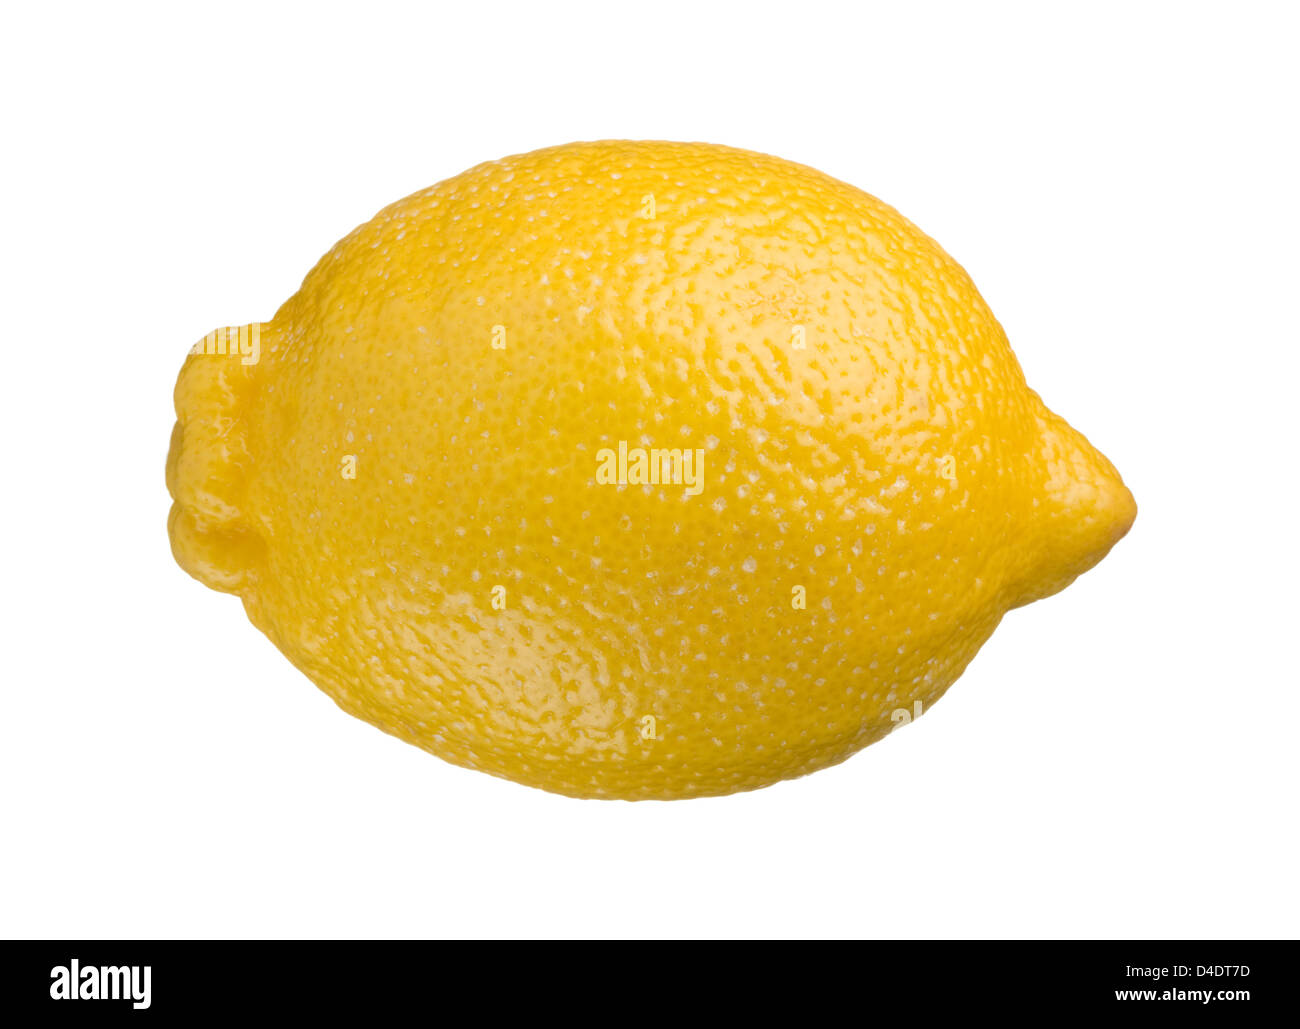 One whole lemon isolated on white background Stock Photo